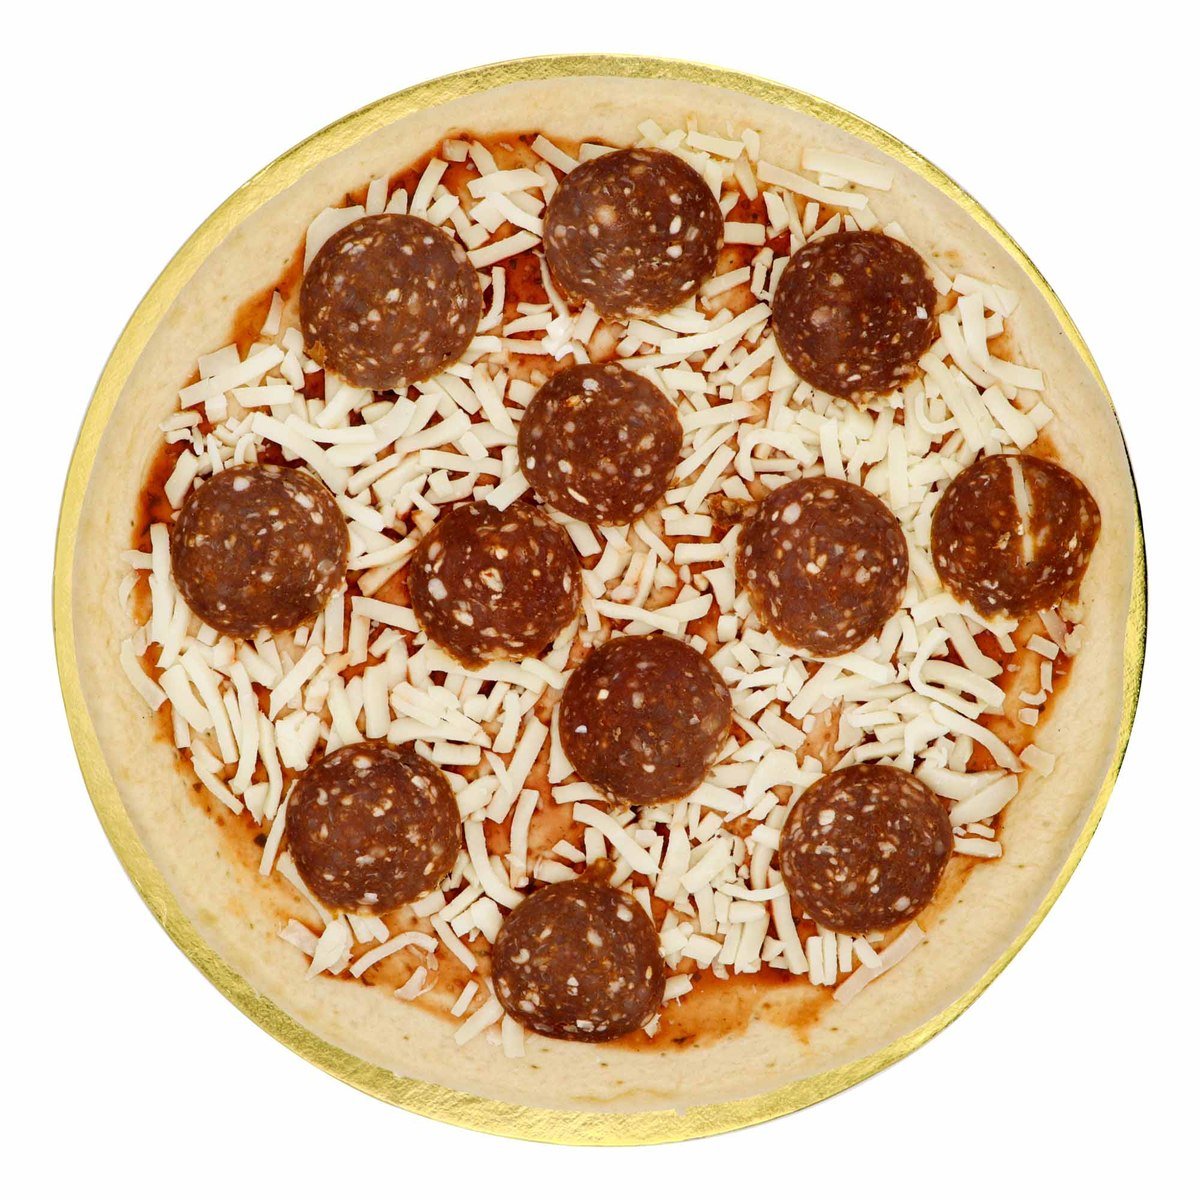 بيتزا البابروني كبيرة الحجم قطعة واحدة